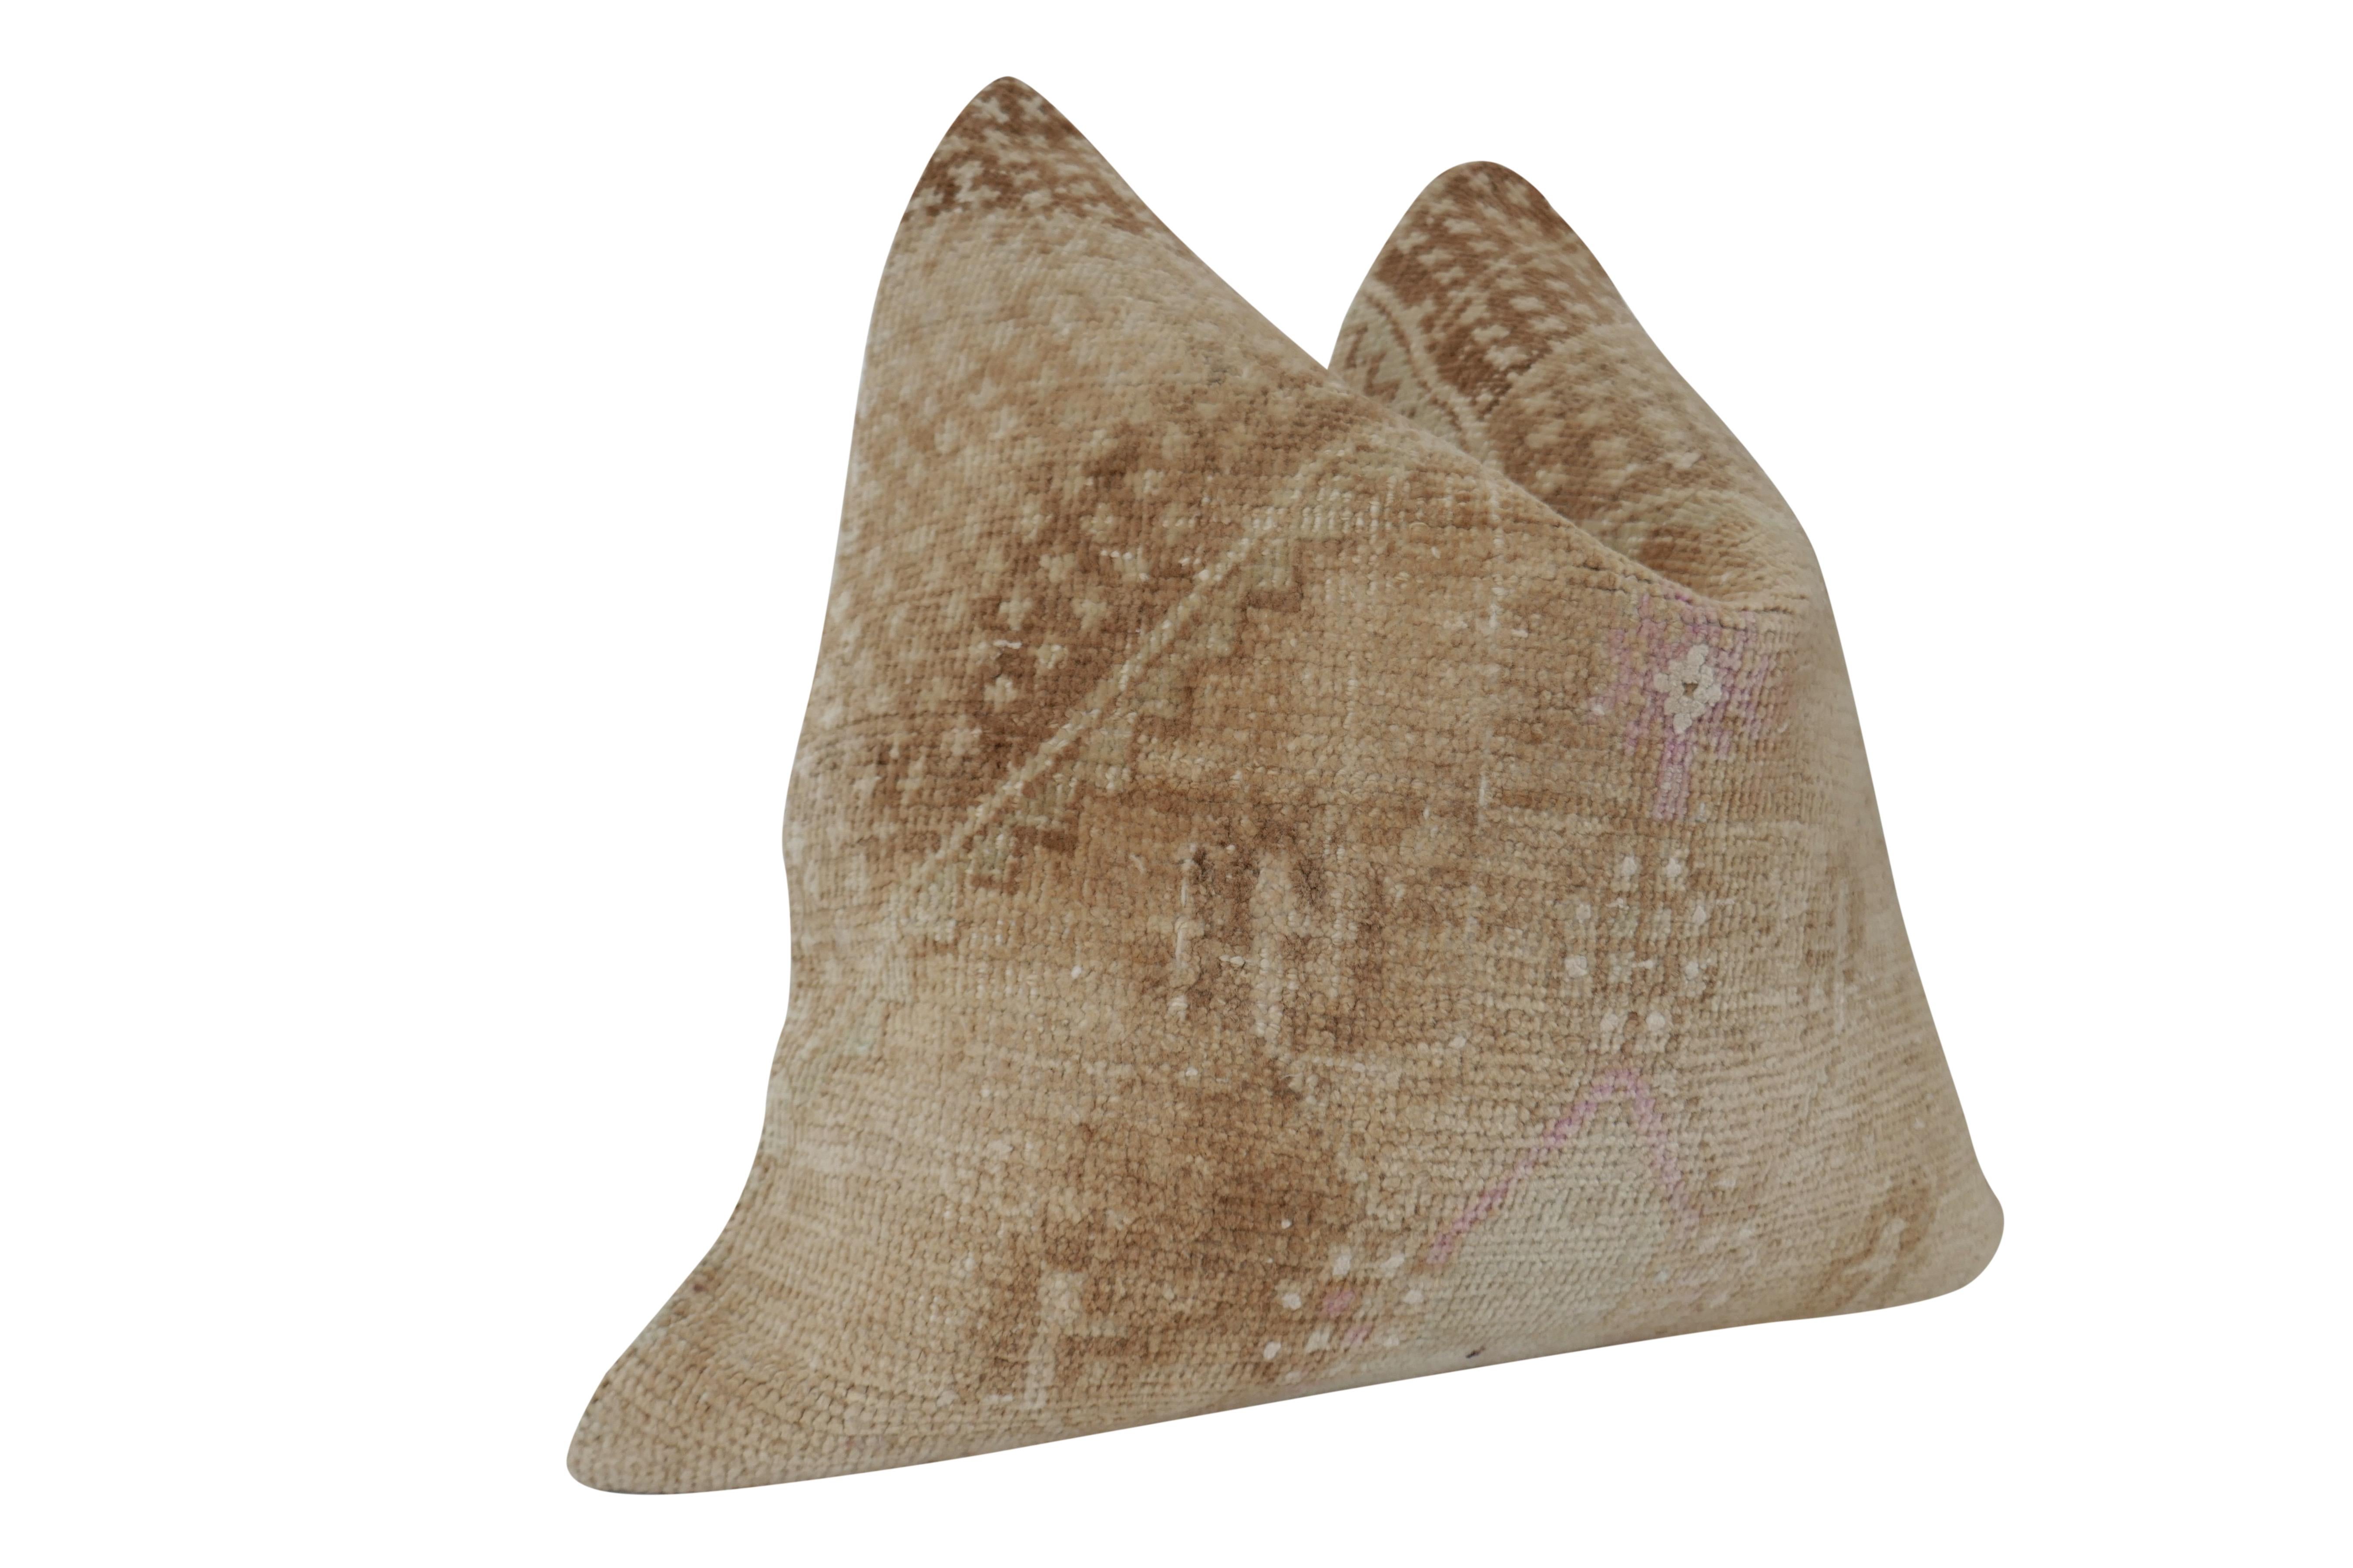 Fragments Identity authentique vintage Anatolian Kilim wool large pillow. Magnifique art du textile, tissé à la main à partir de pure laine en un motif à texture lourde et complexe créant des tons et des textures étonnants. Ces textiles de